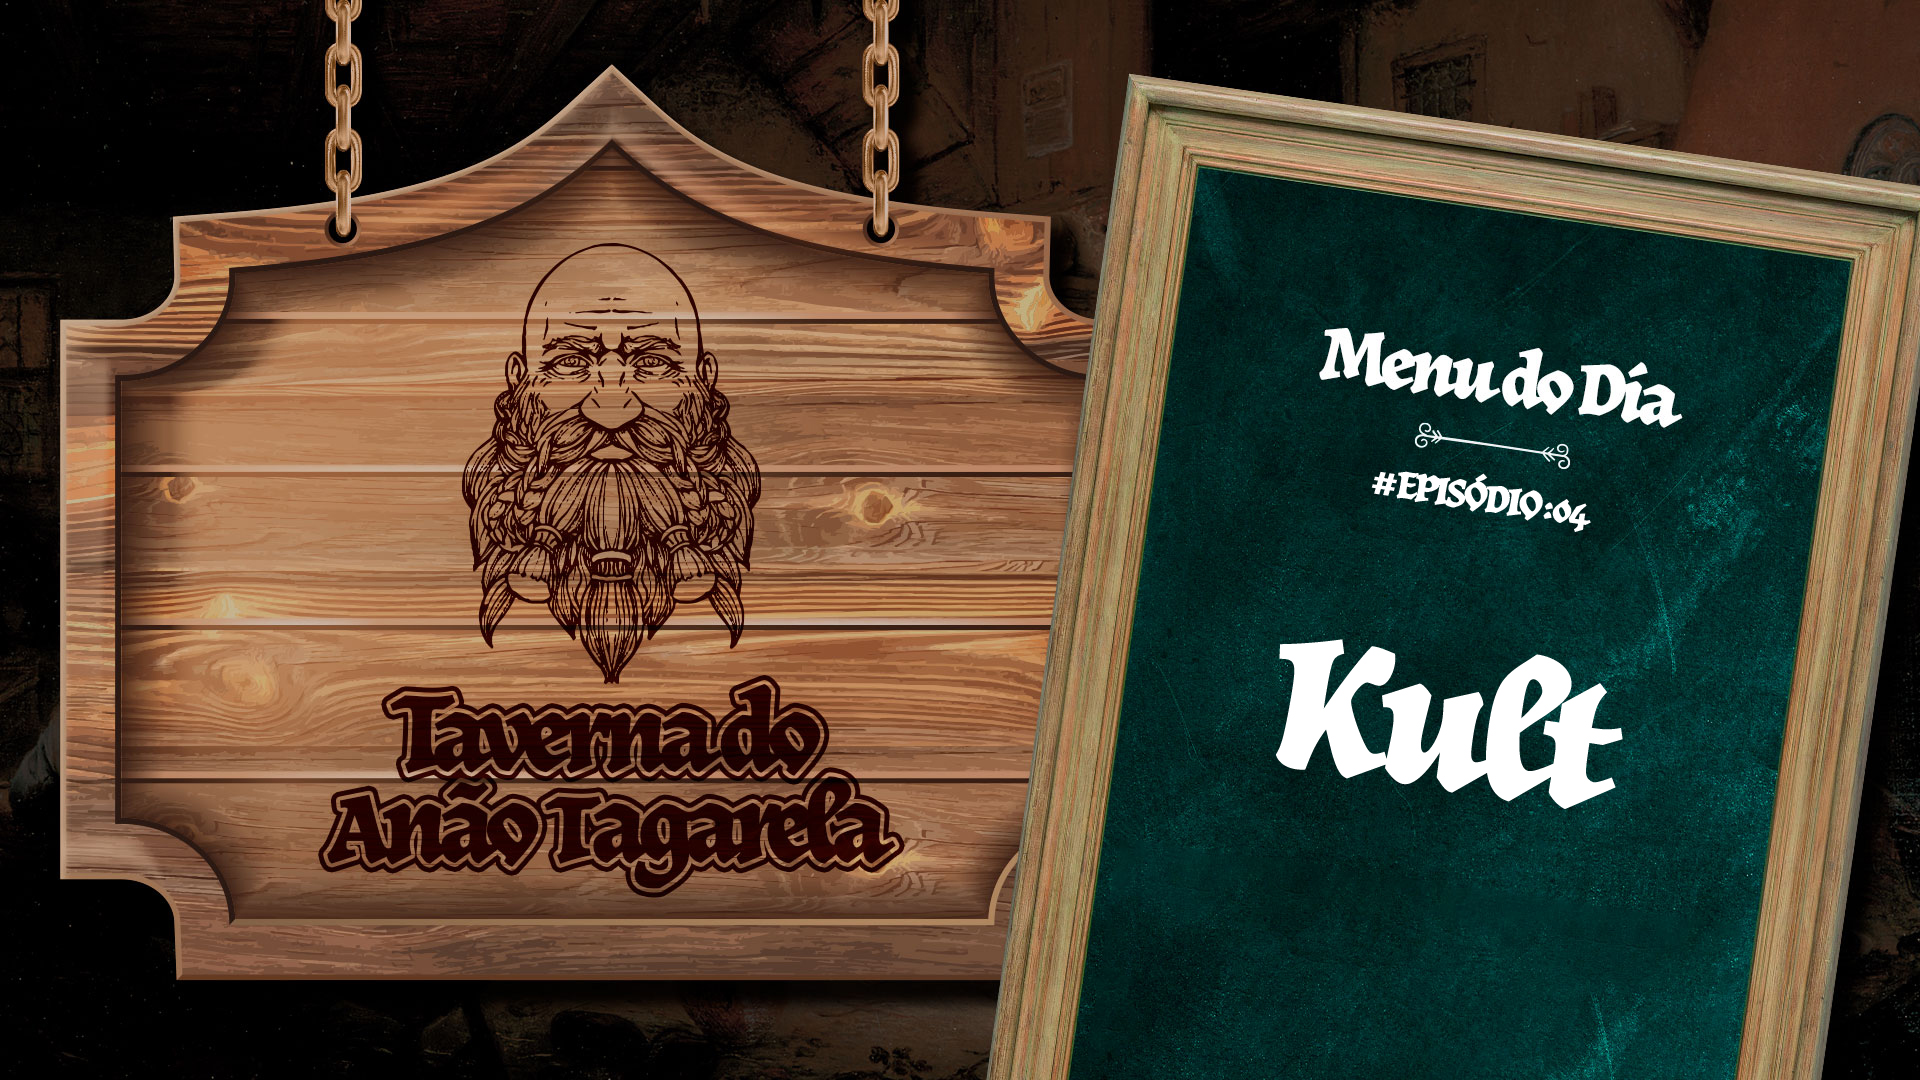 Kult – Taverna do Anão Tagarela #04